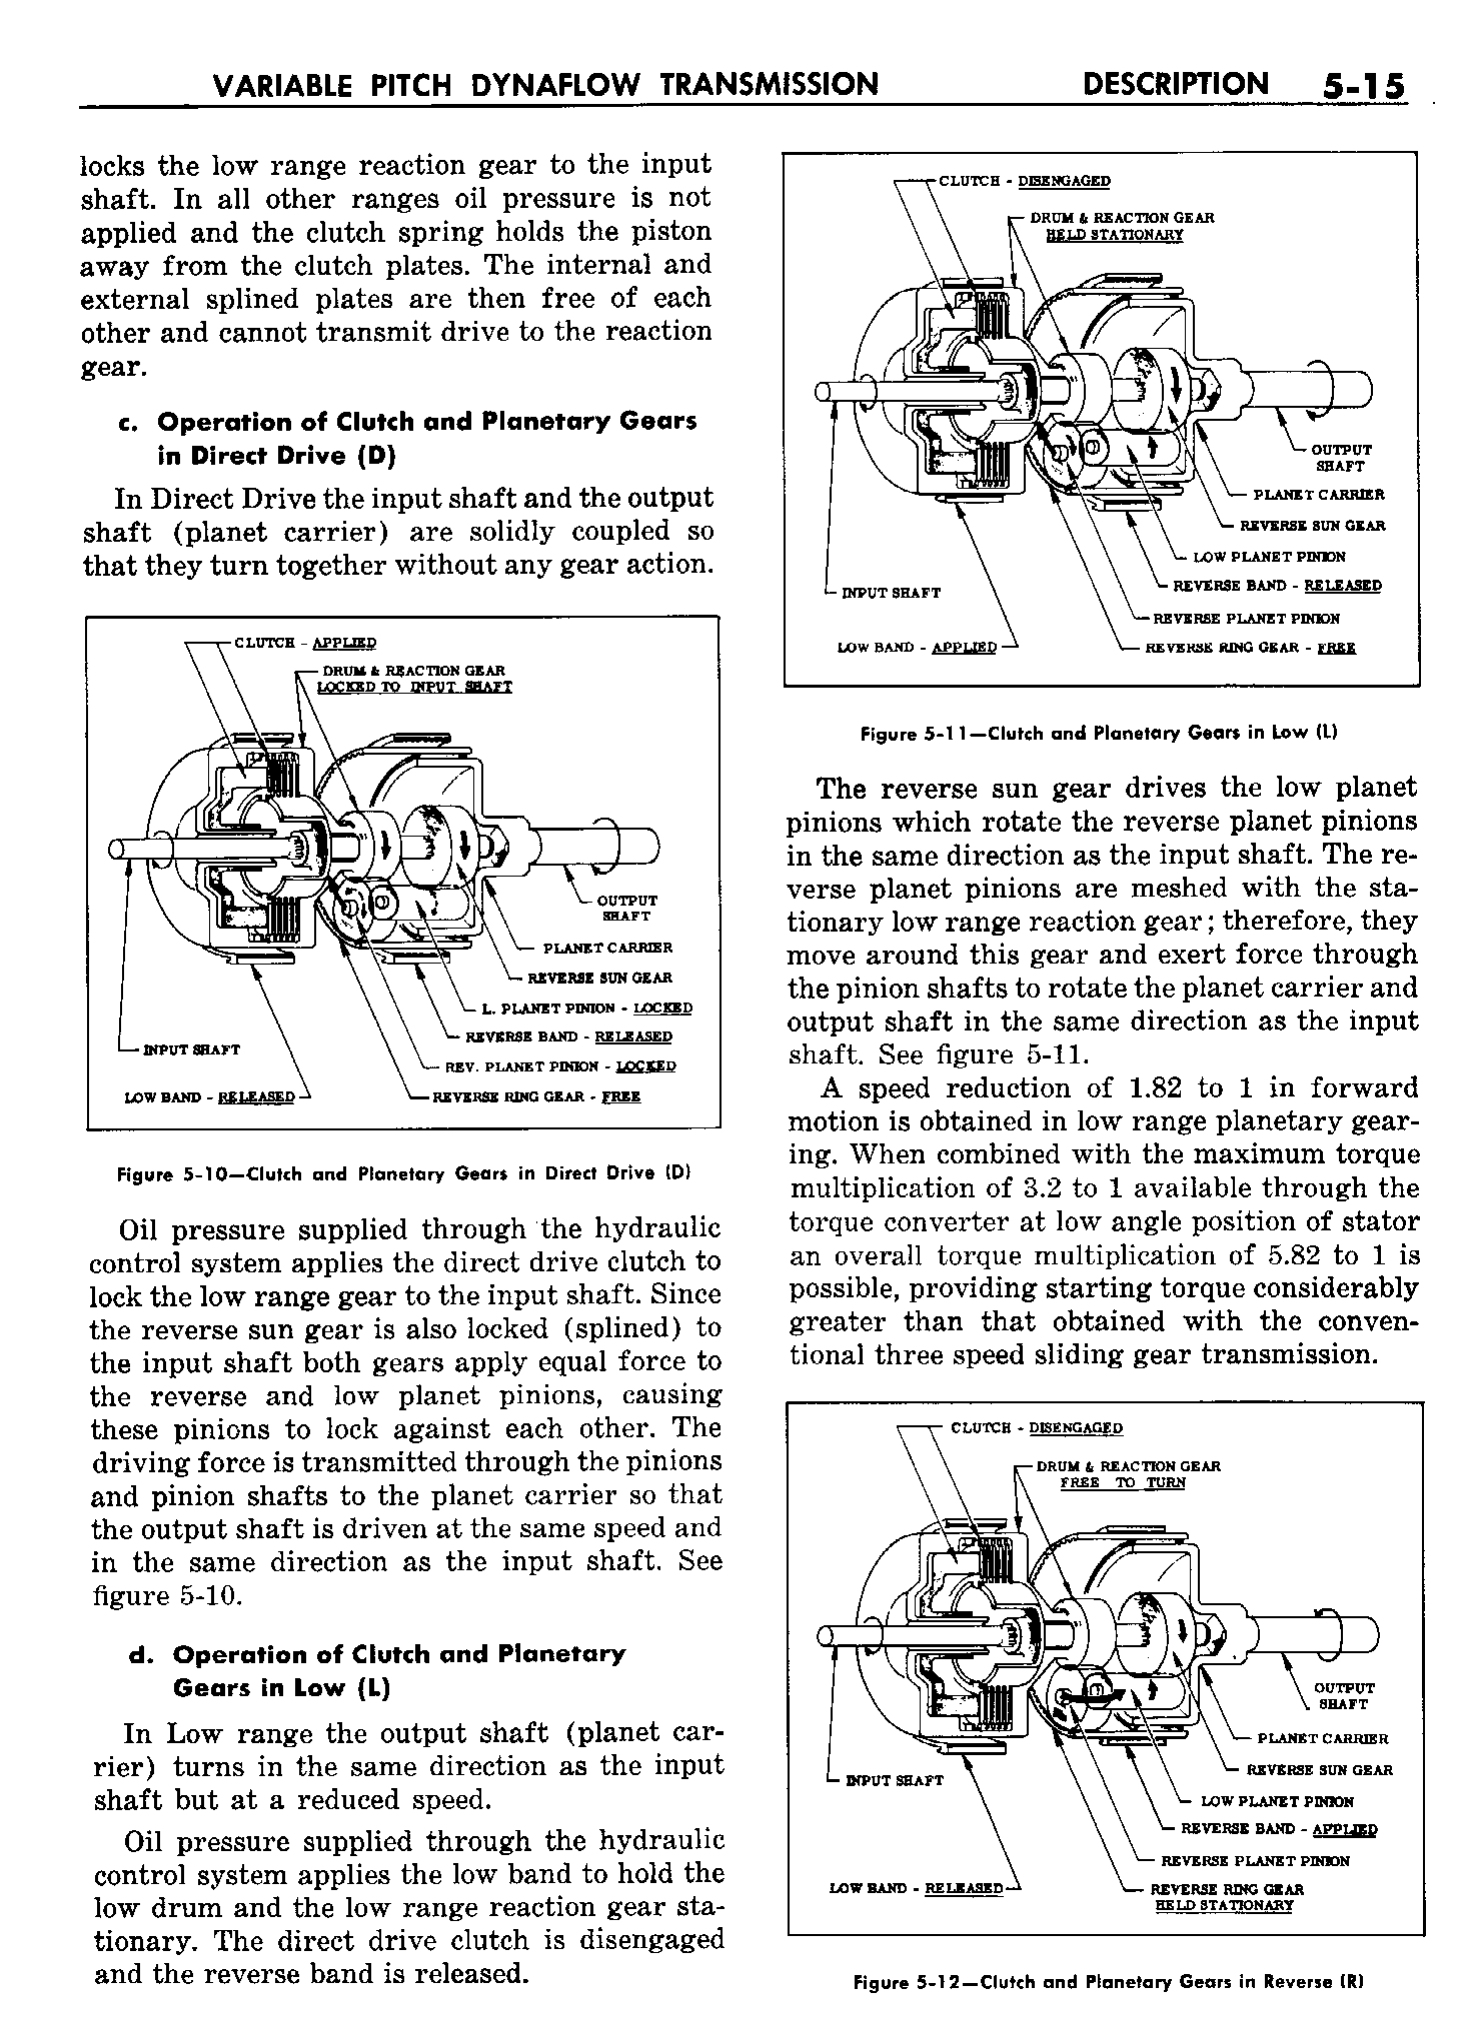 n_06 1958 Buick Shop Manual - Dynaflow_15.jpg